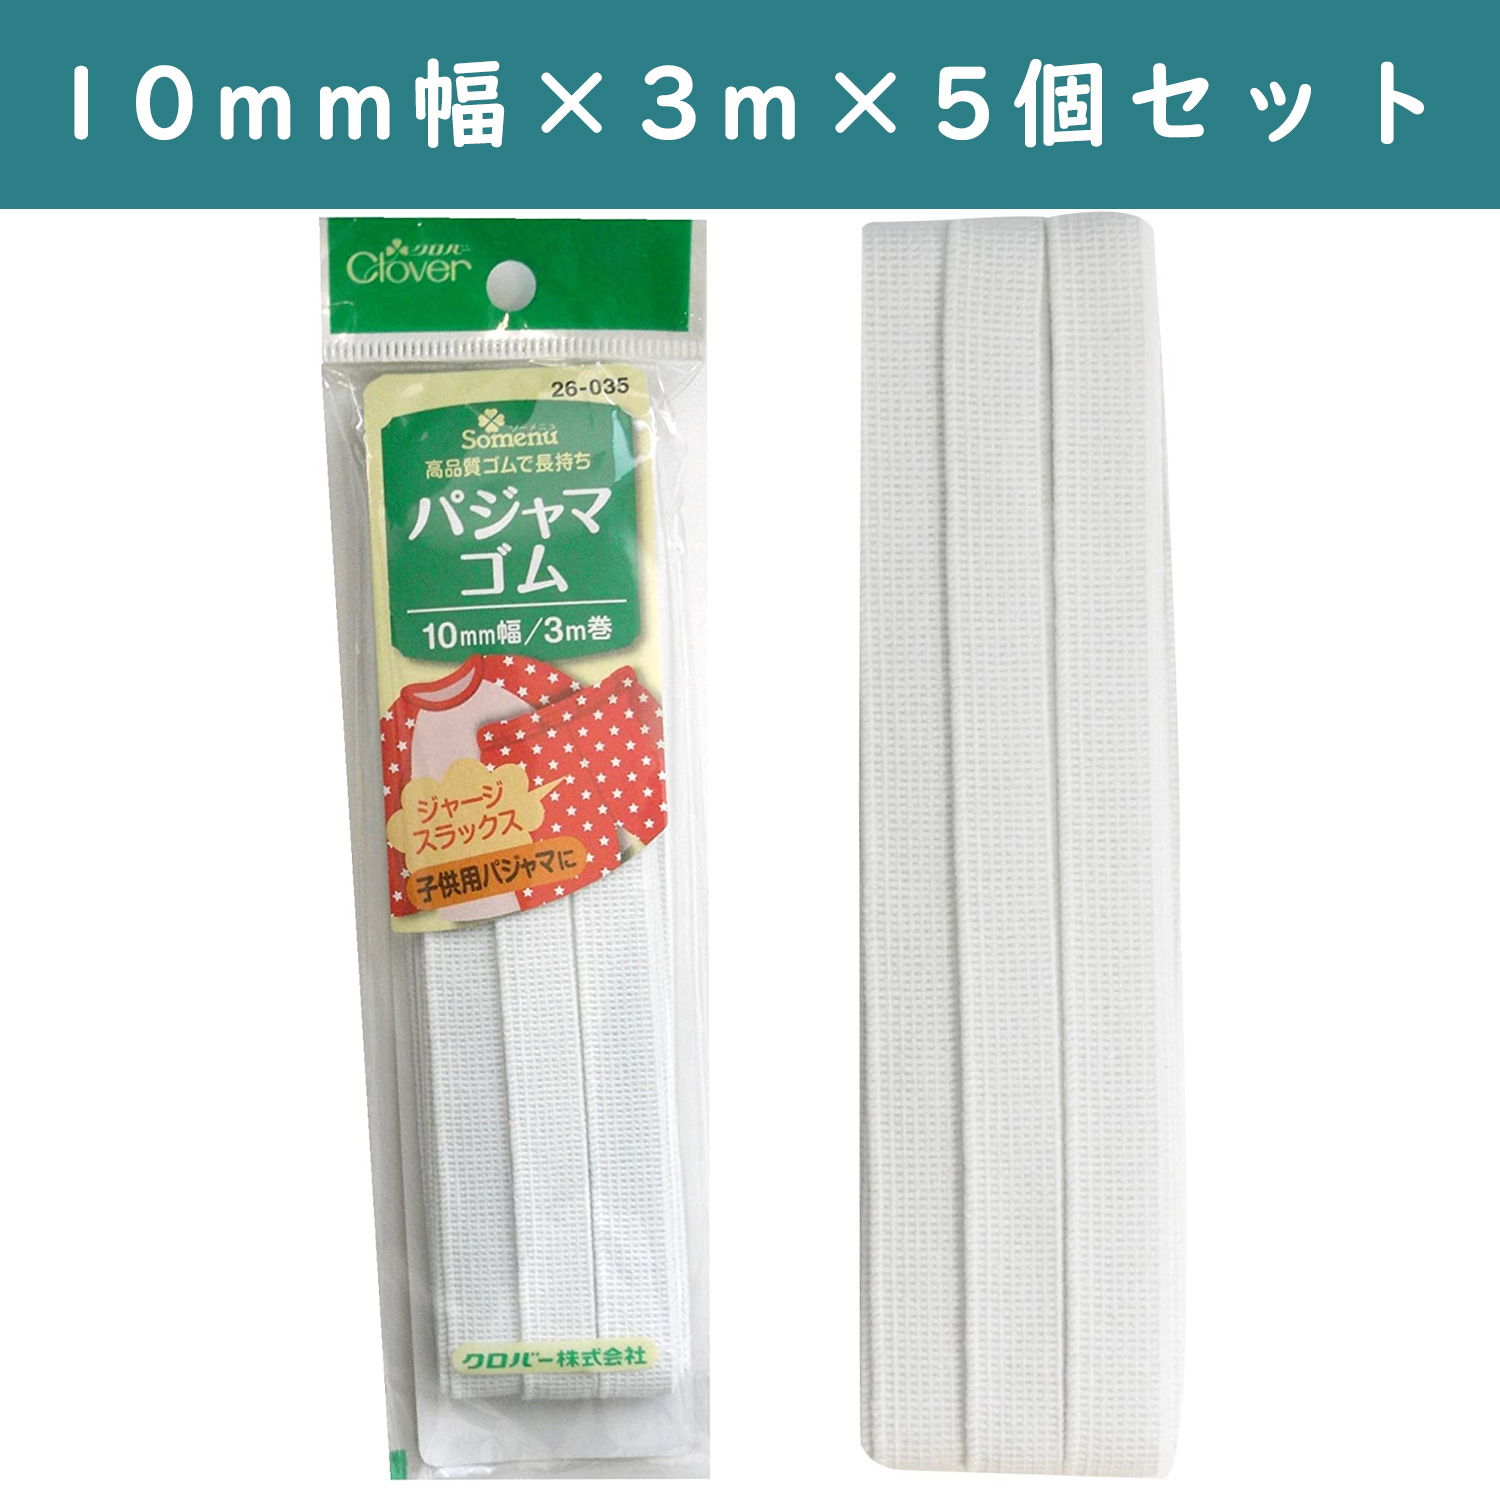 ■【5個】CL26-035-5set パジャマゴム 10mm幅 3m巻 白 ×5個 (セット)